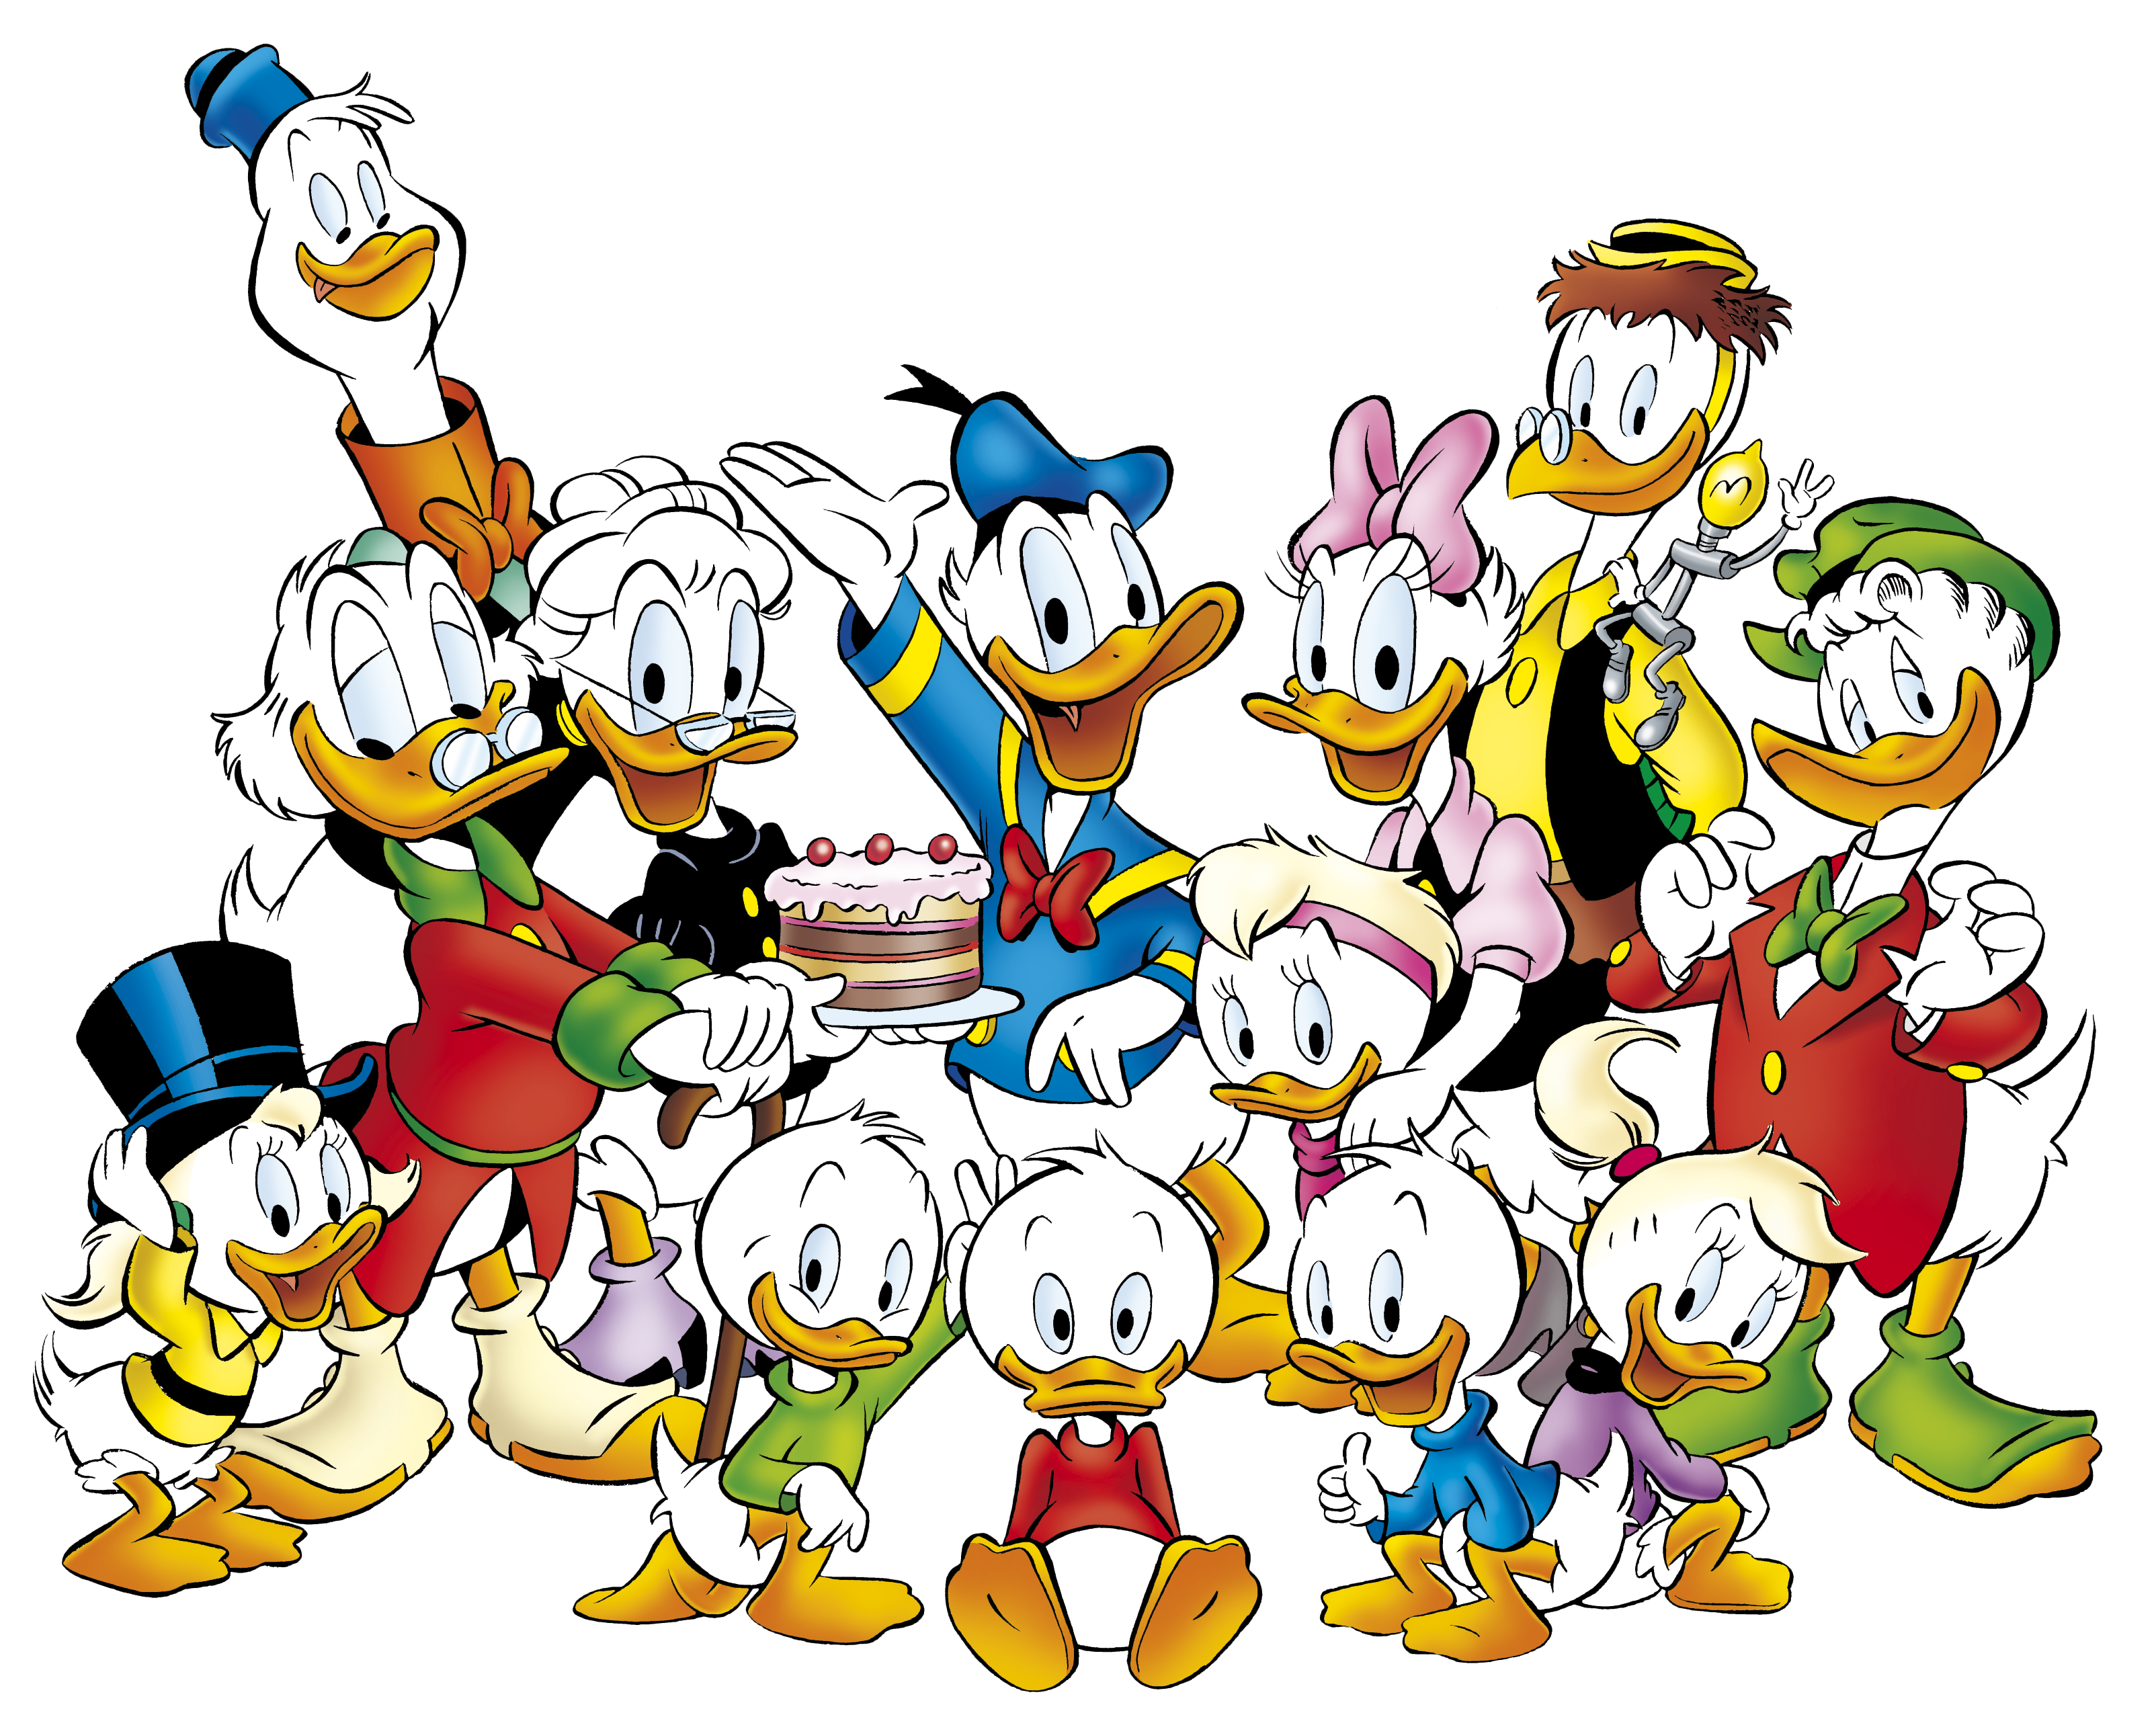 ‘Donald Duck is een en al satire op de maatschappij’